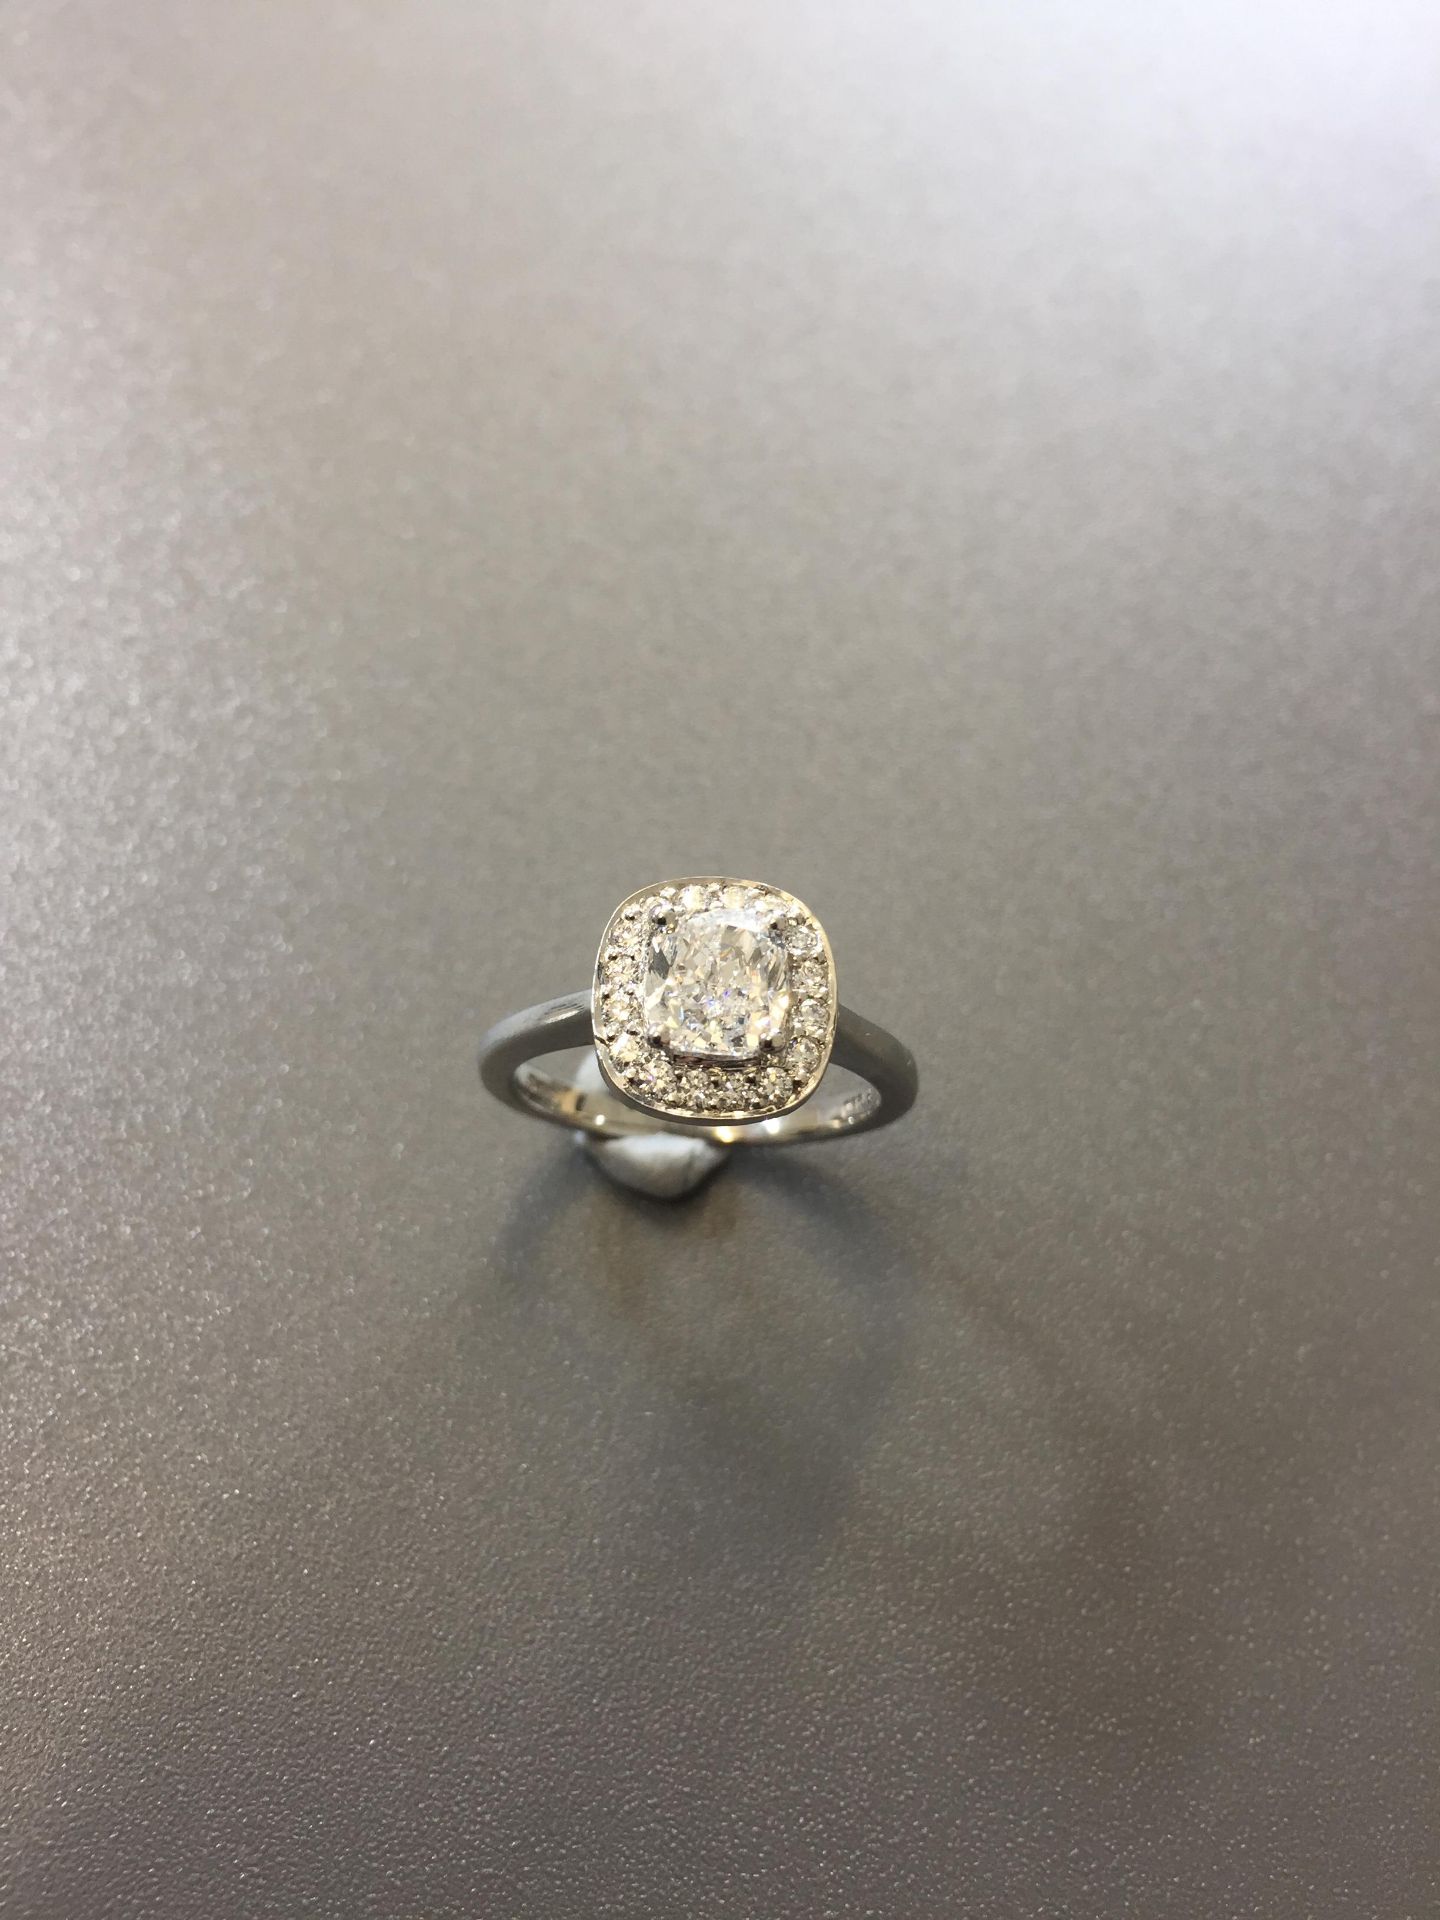 1ct Cushion cut diamond Solitaire Halo style ring,1ct h colour vs clarity cushion cut diamond, - Bild 6 aus 6